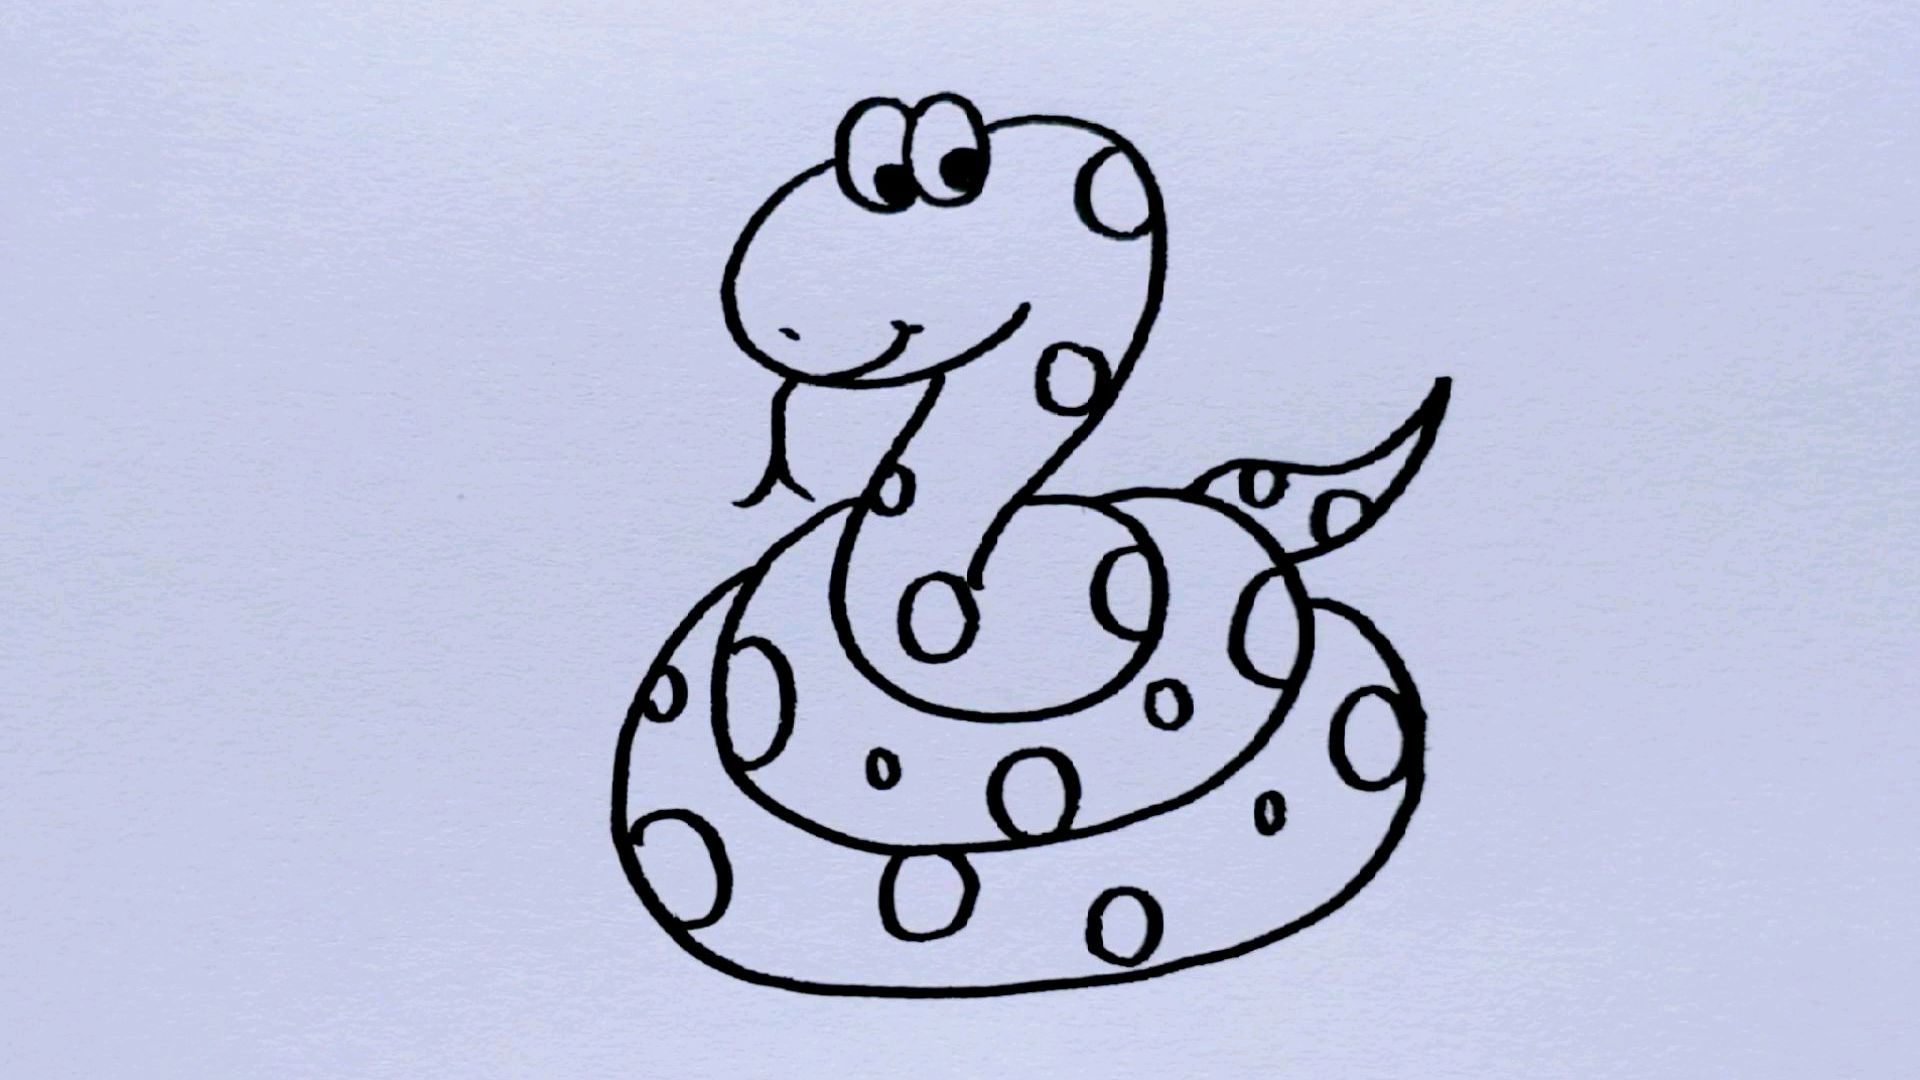 4蛇的简单画法  00:36  来源:好看视频-大蟒蛇的简单画法 5如何画凶猛